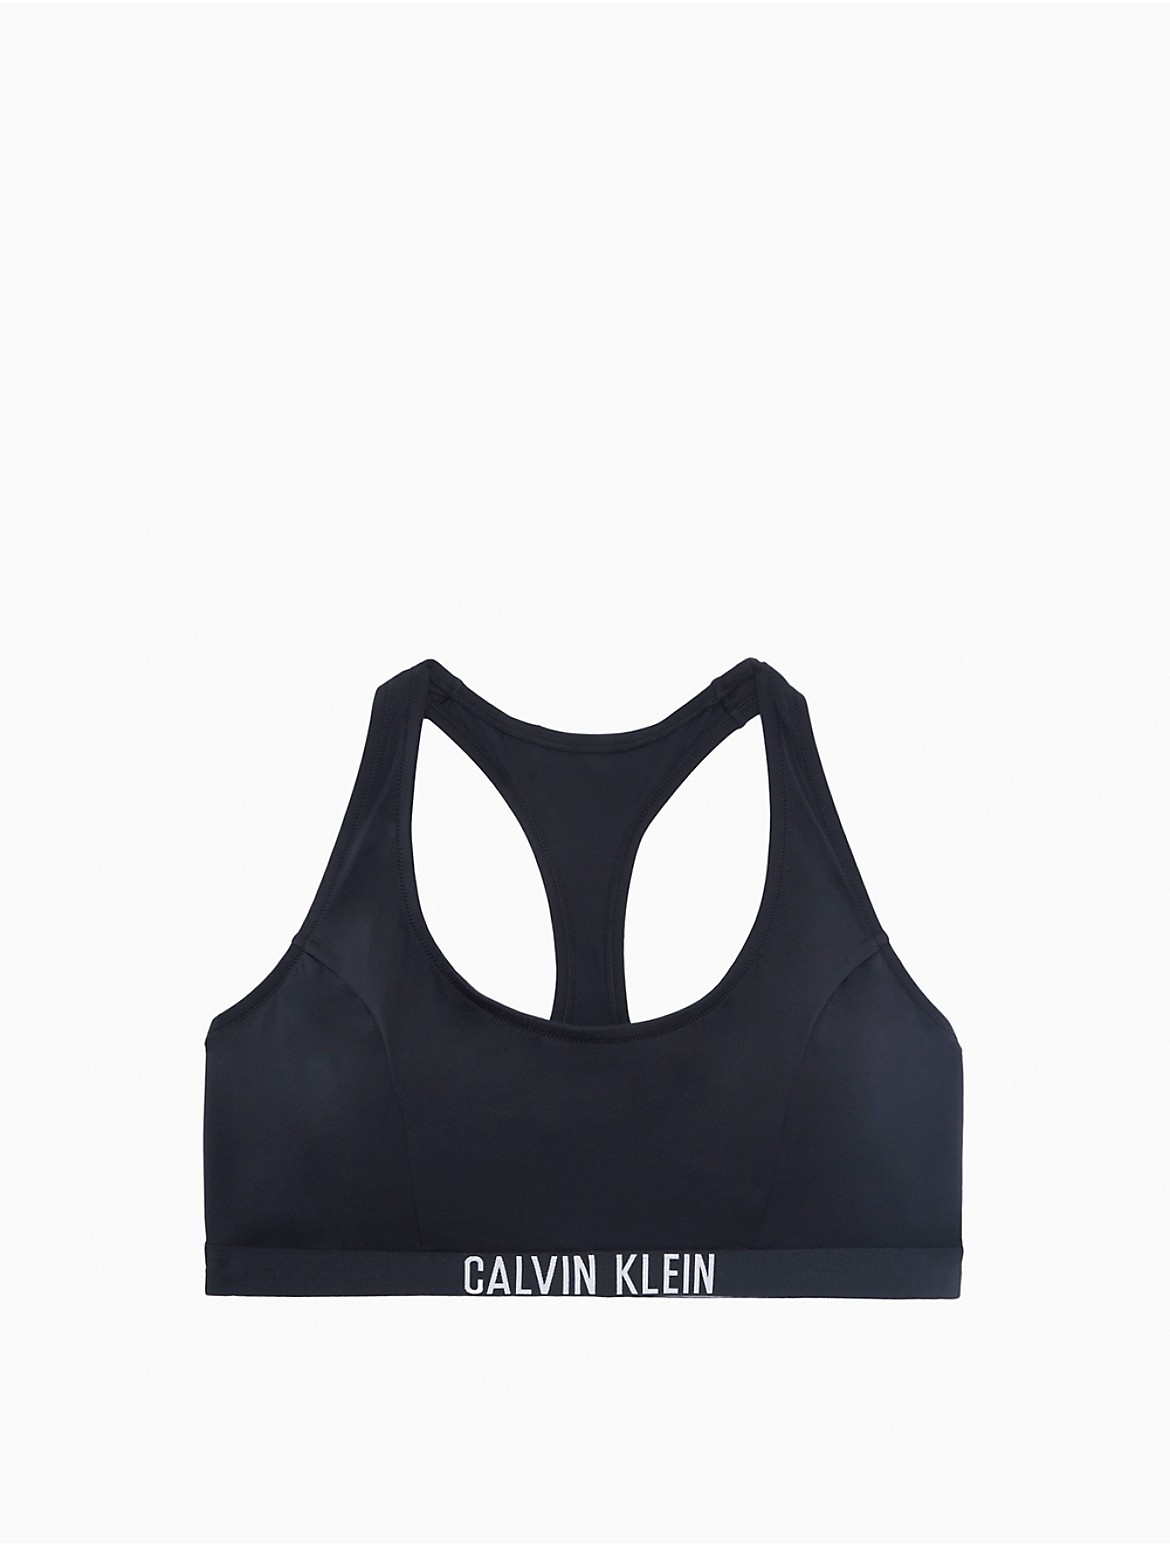 Calvin Klein Women's Intense Power Plus Size Bralette Bikini Top - Black - 2X